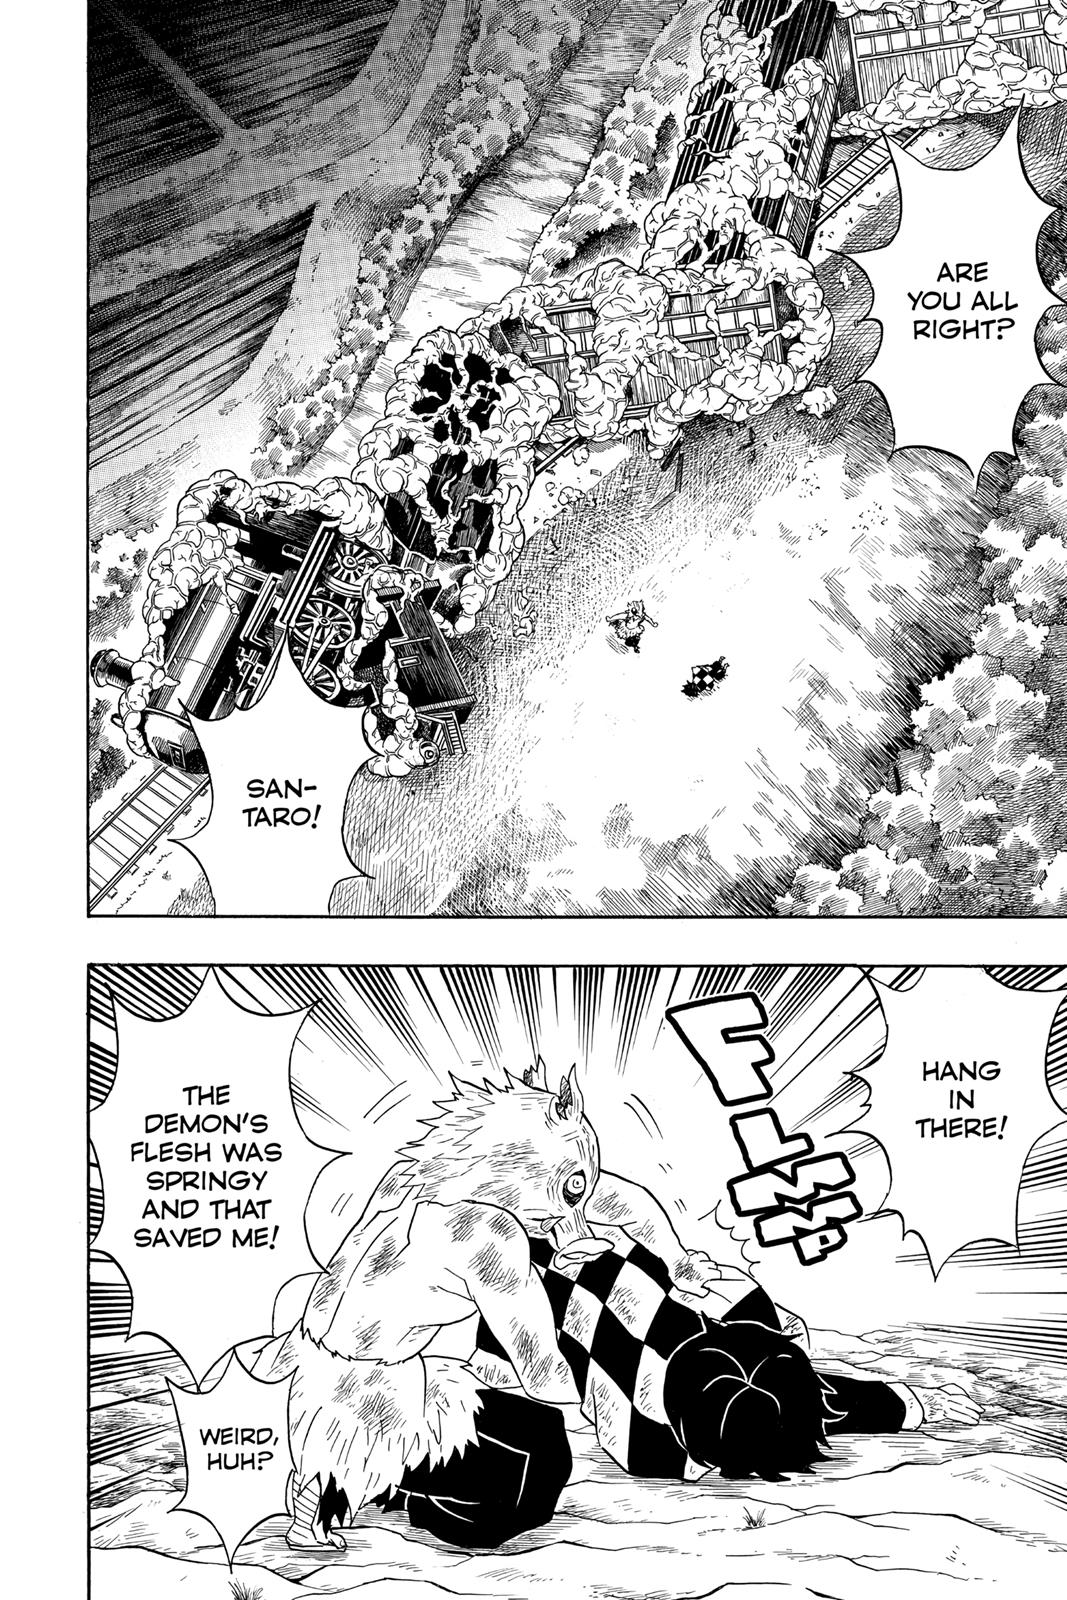 Demon Slayer Manga Manga Chapter - 62 - image 9